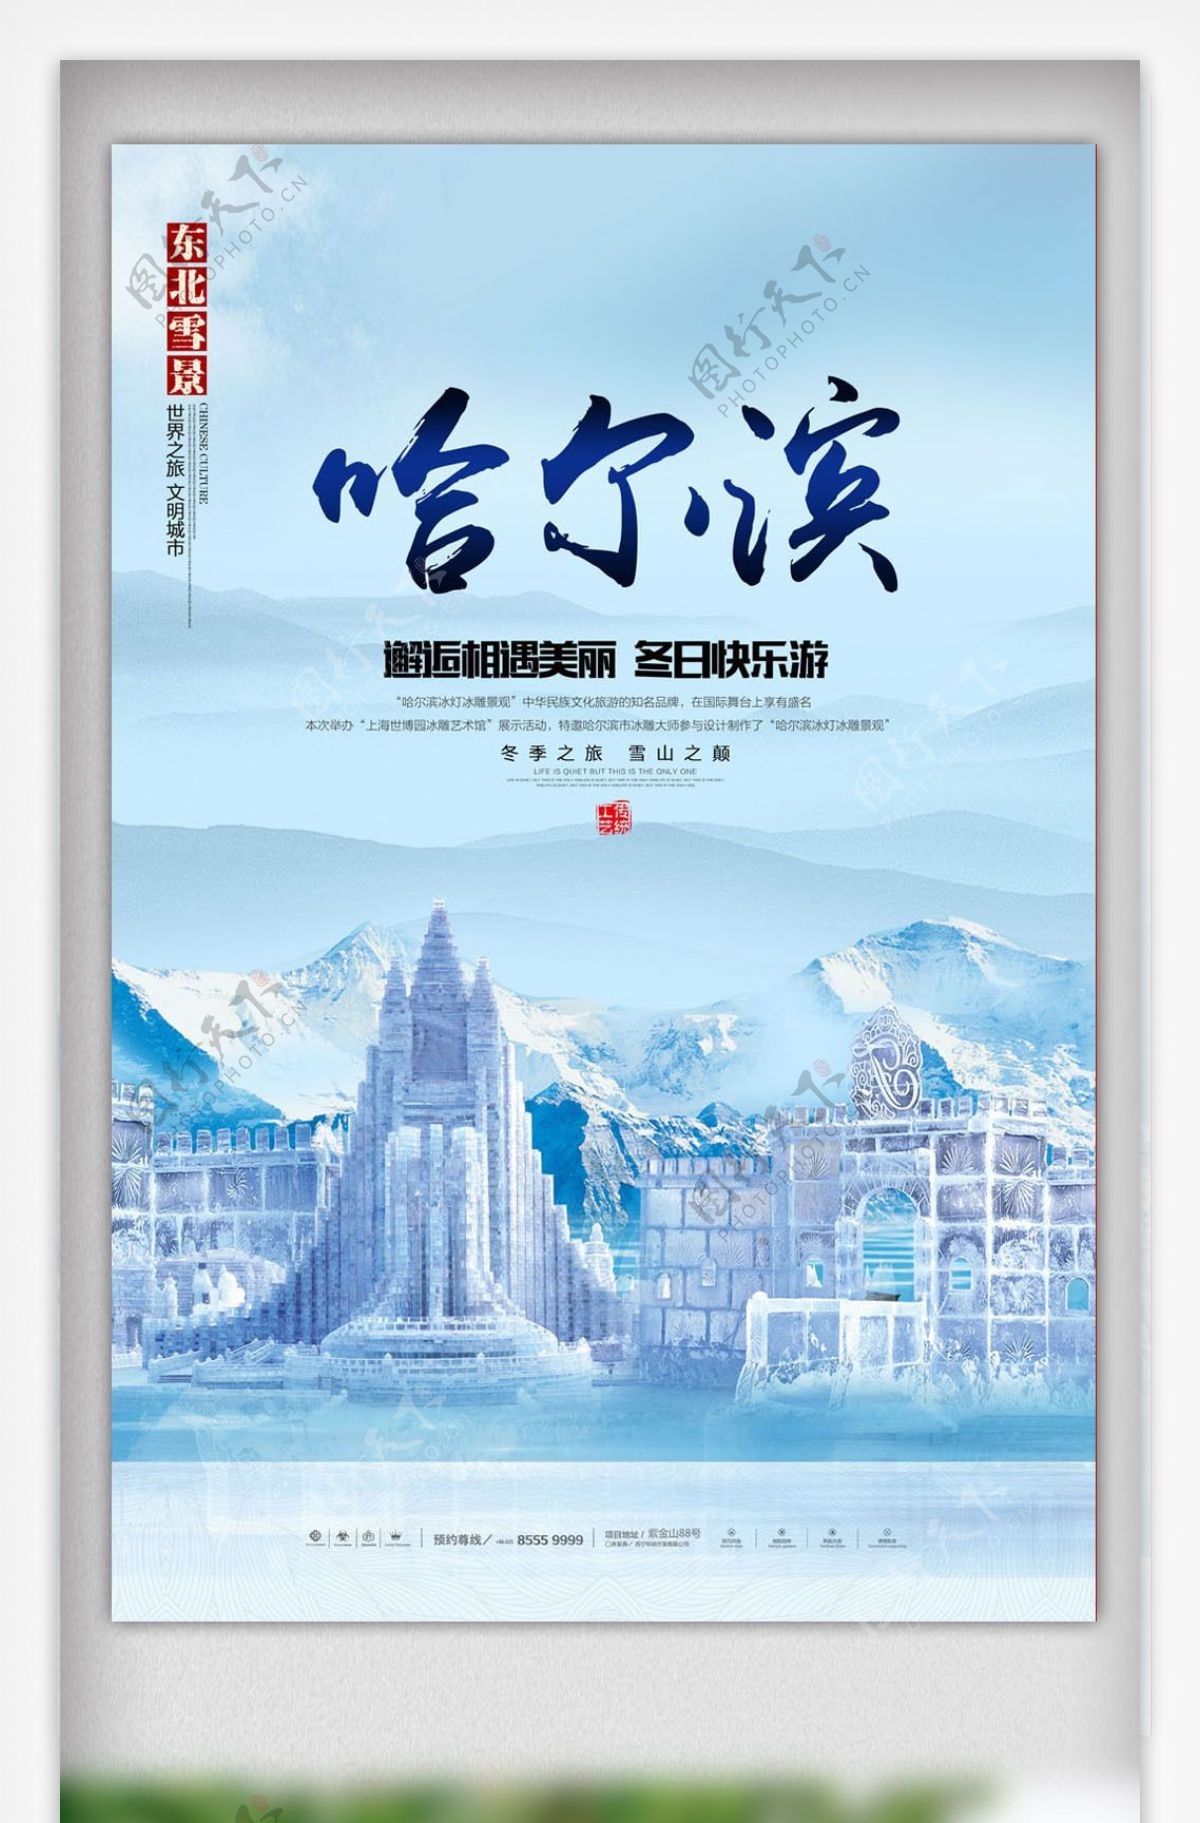 最新哈尔滨旅游宣传海报设计